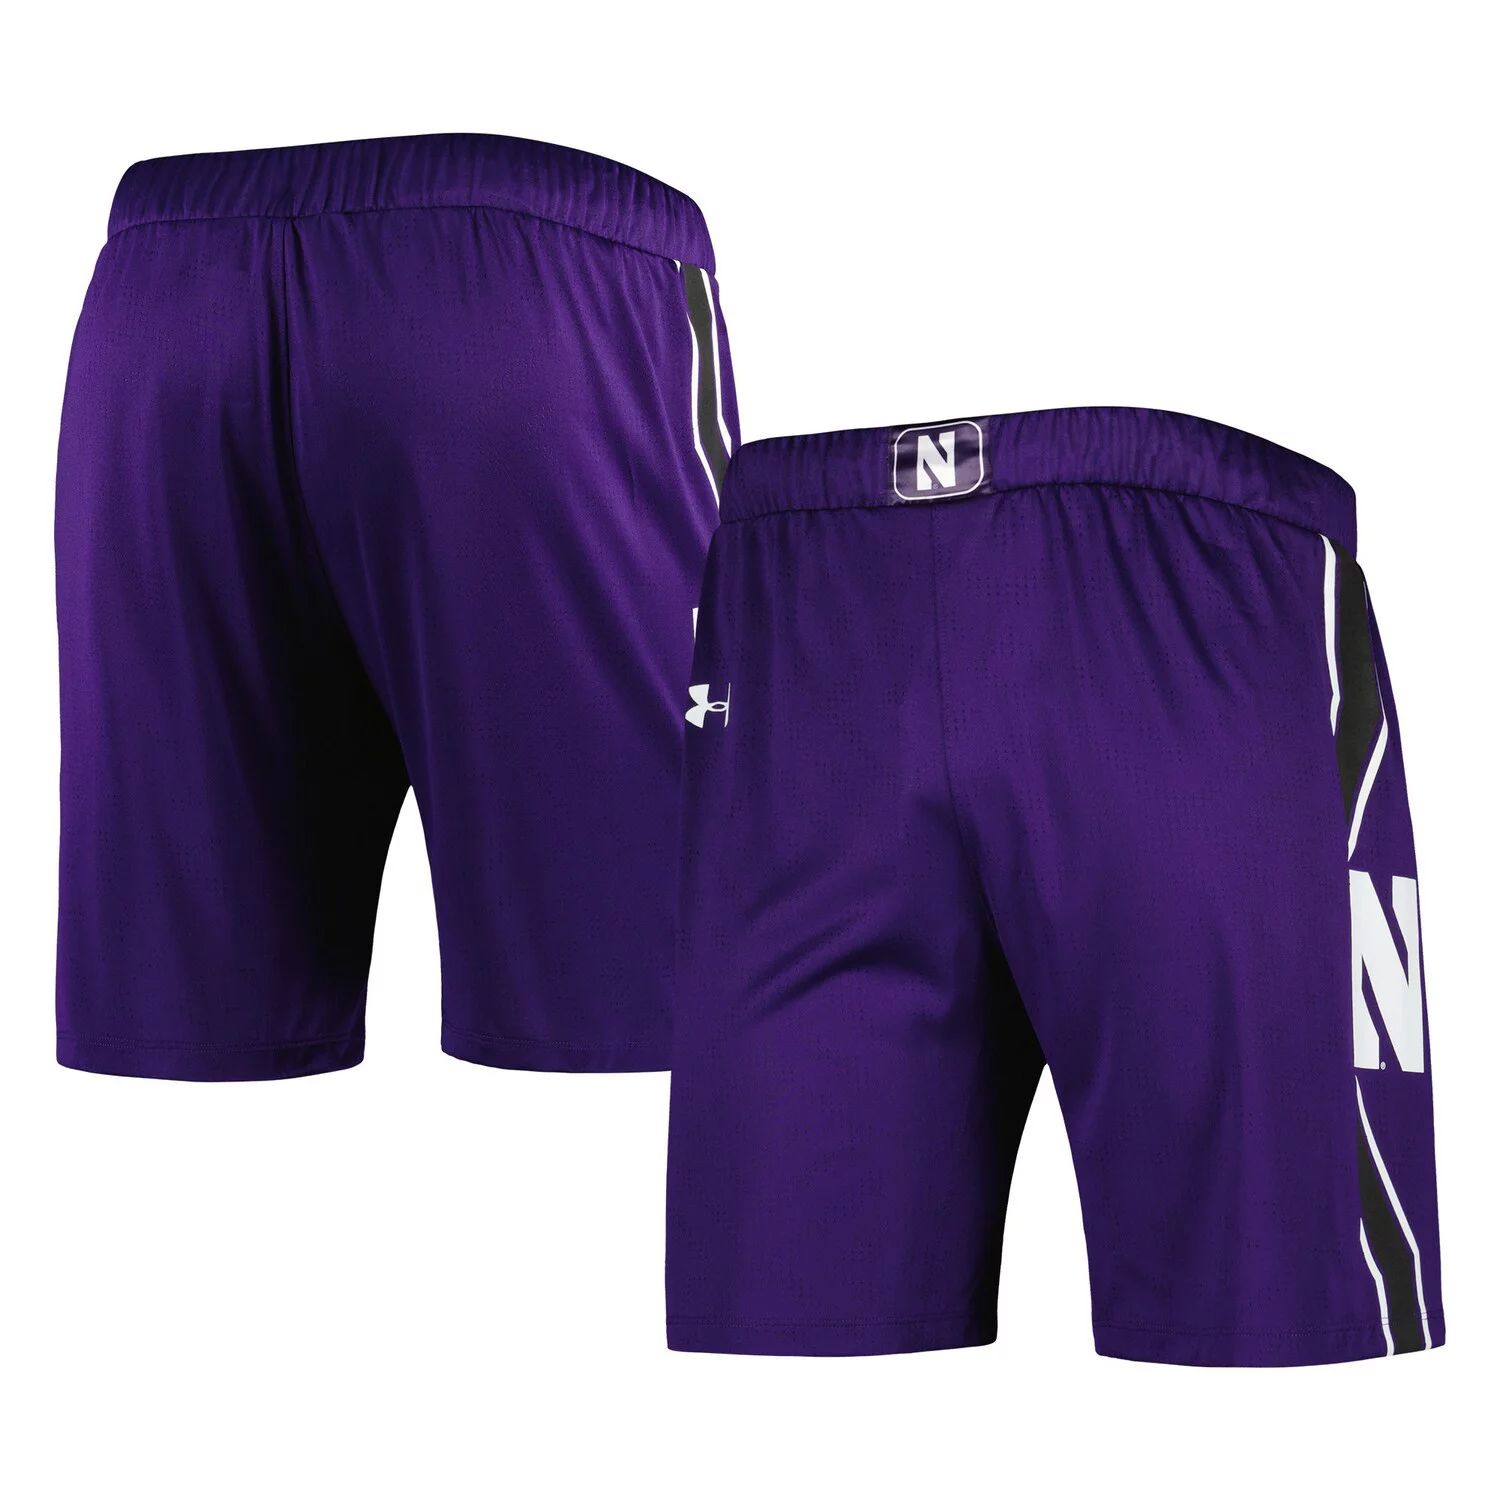 Мужские фиолетовые баскетбольные шорты с логотипом Northwestern Wildcats Under Armour цена и фото